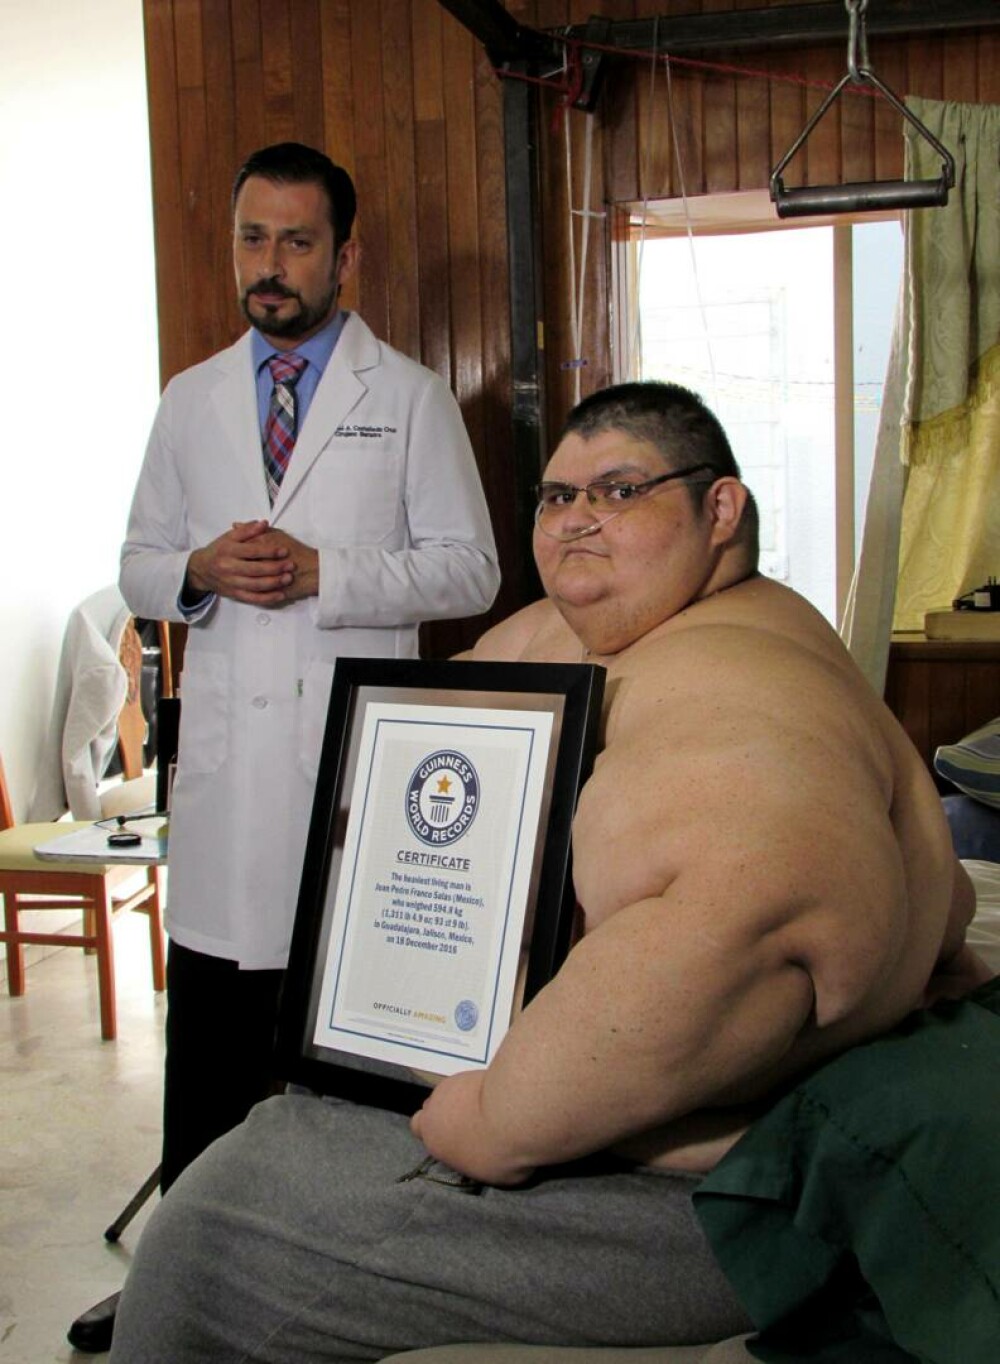 Transformarea incredibilă a celui mai gras om din lume. Cum arată după ce a slăbit 330 de kilograme | FOTO - Imaginea 8